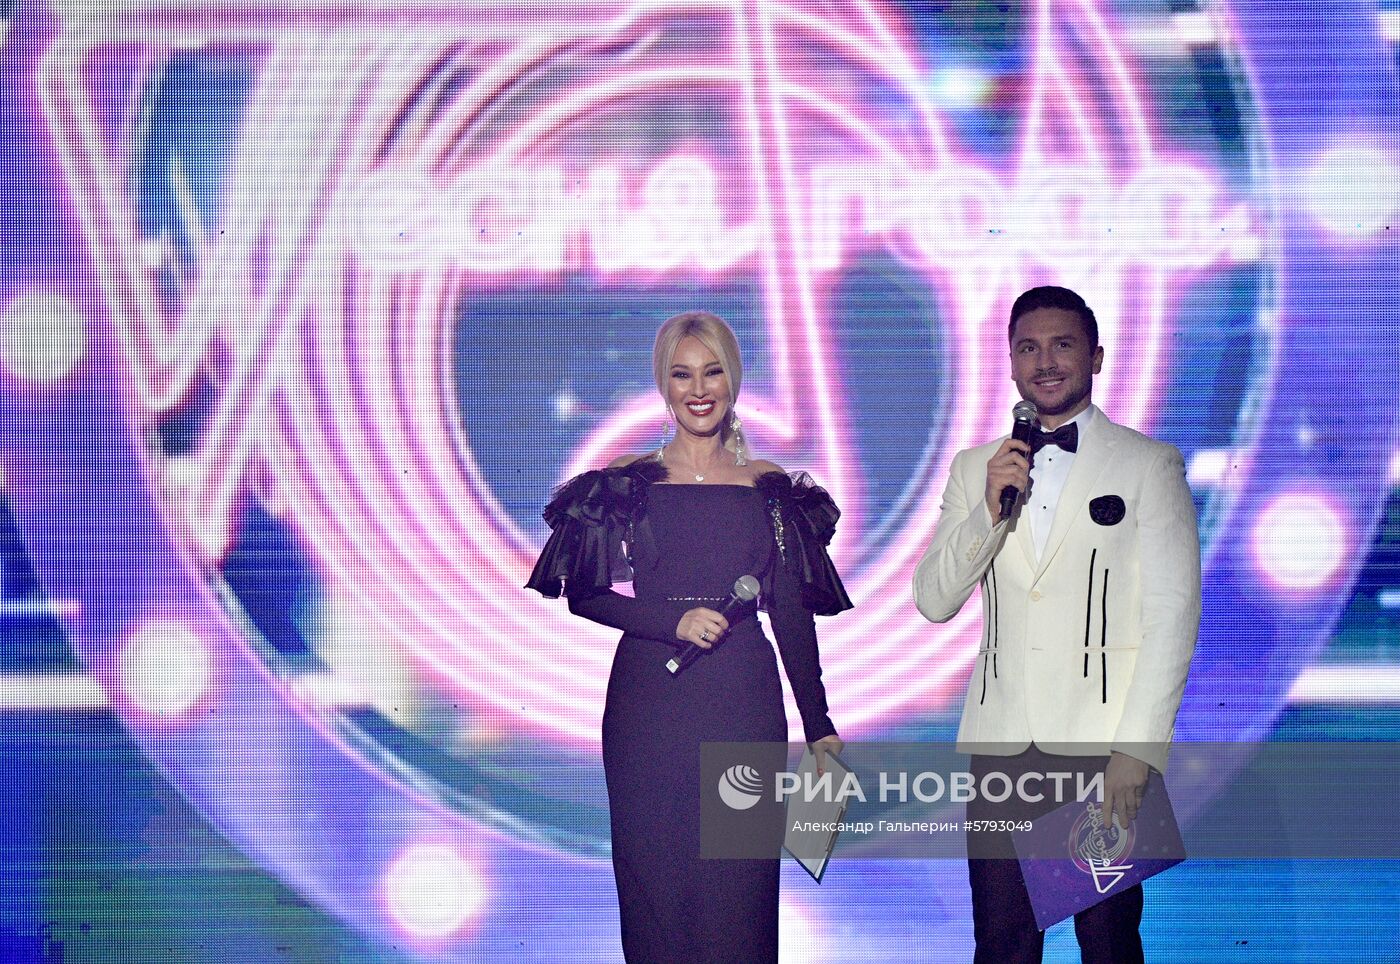 Фестиваль "Песня года - 2019" в Санкт-Петербурге